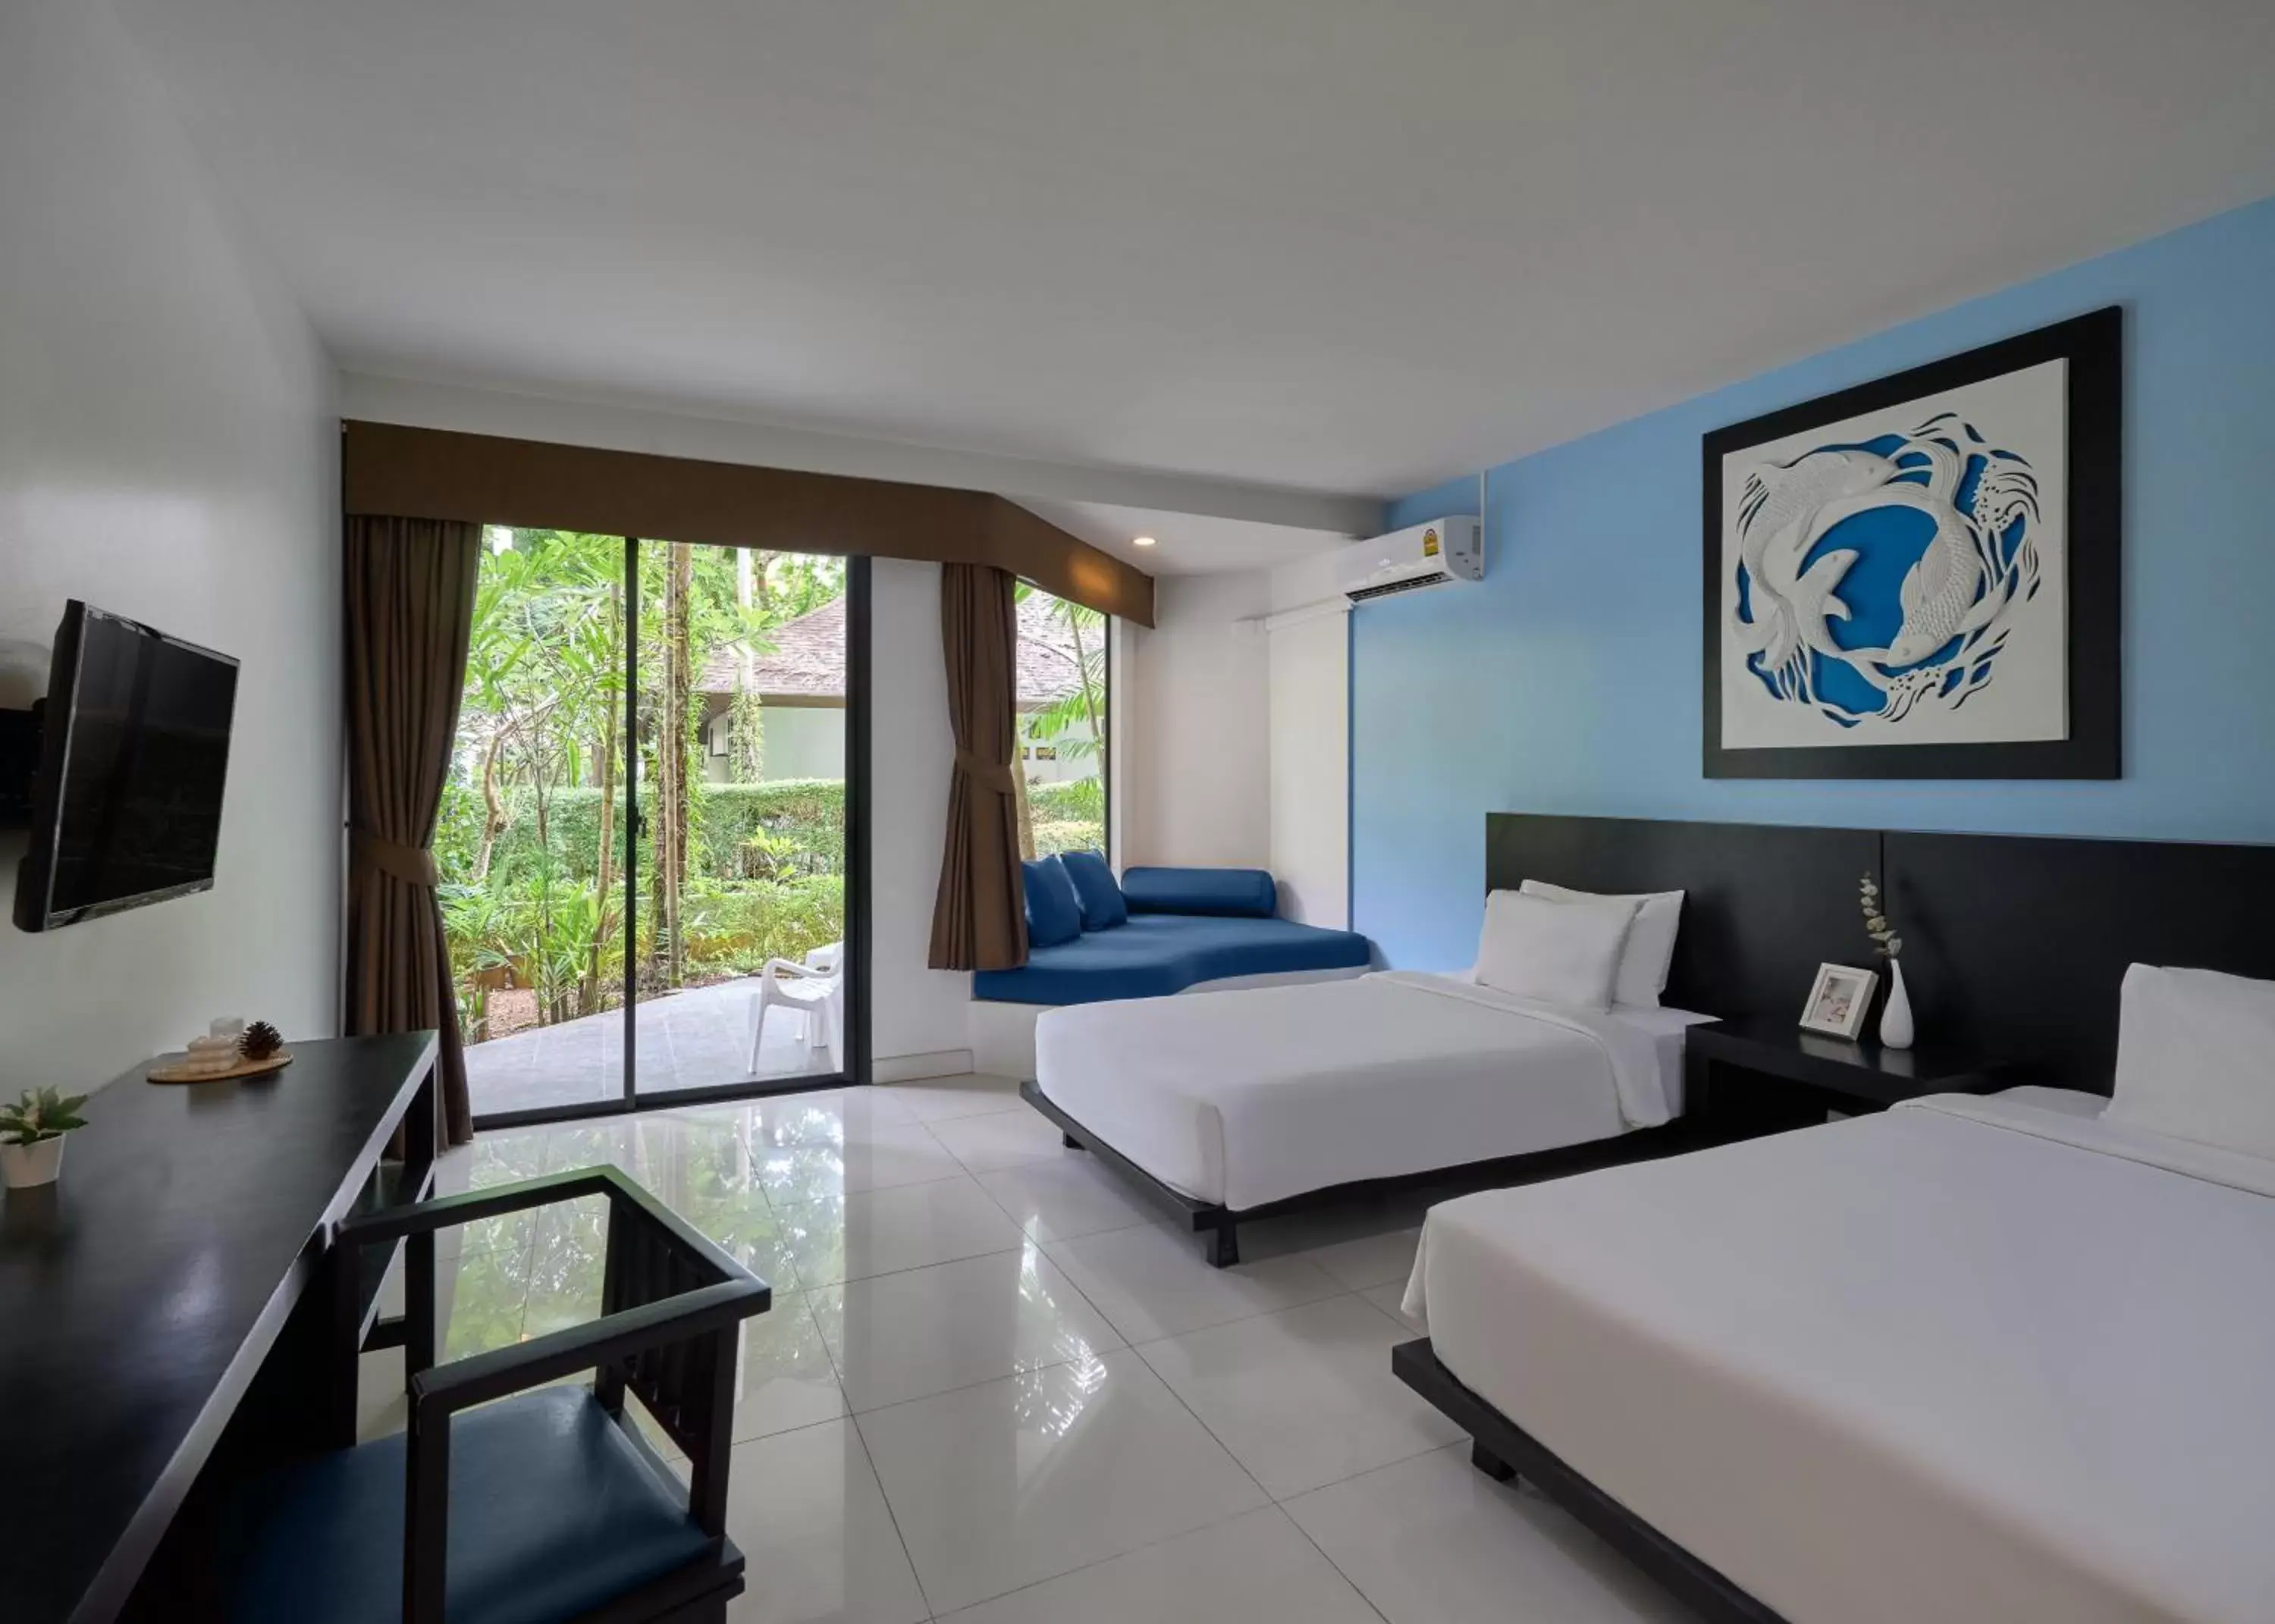 Bed in Nai Yang Beach Resort and Spa